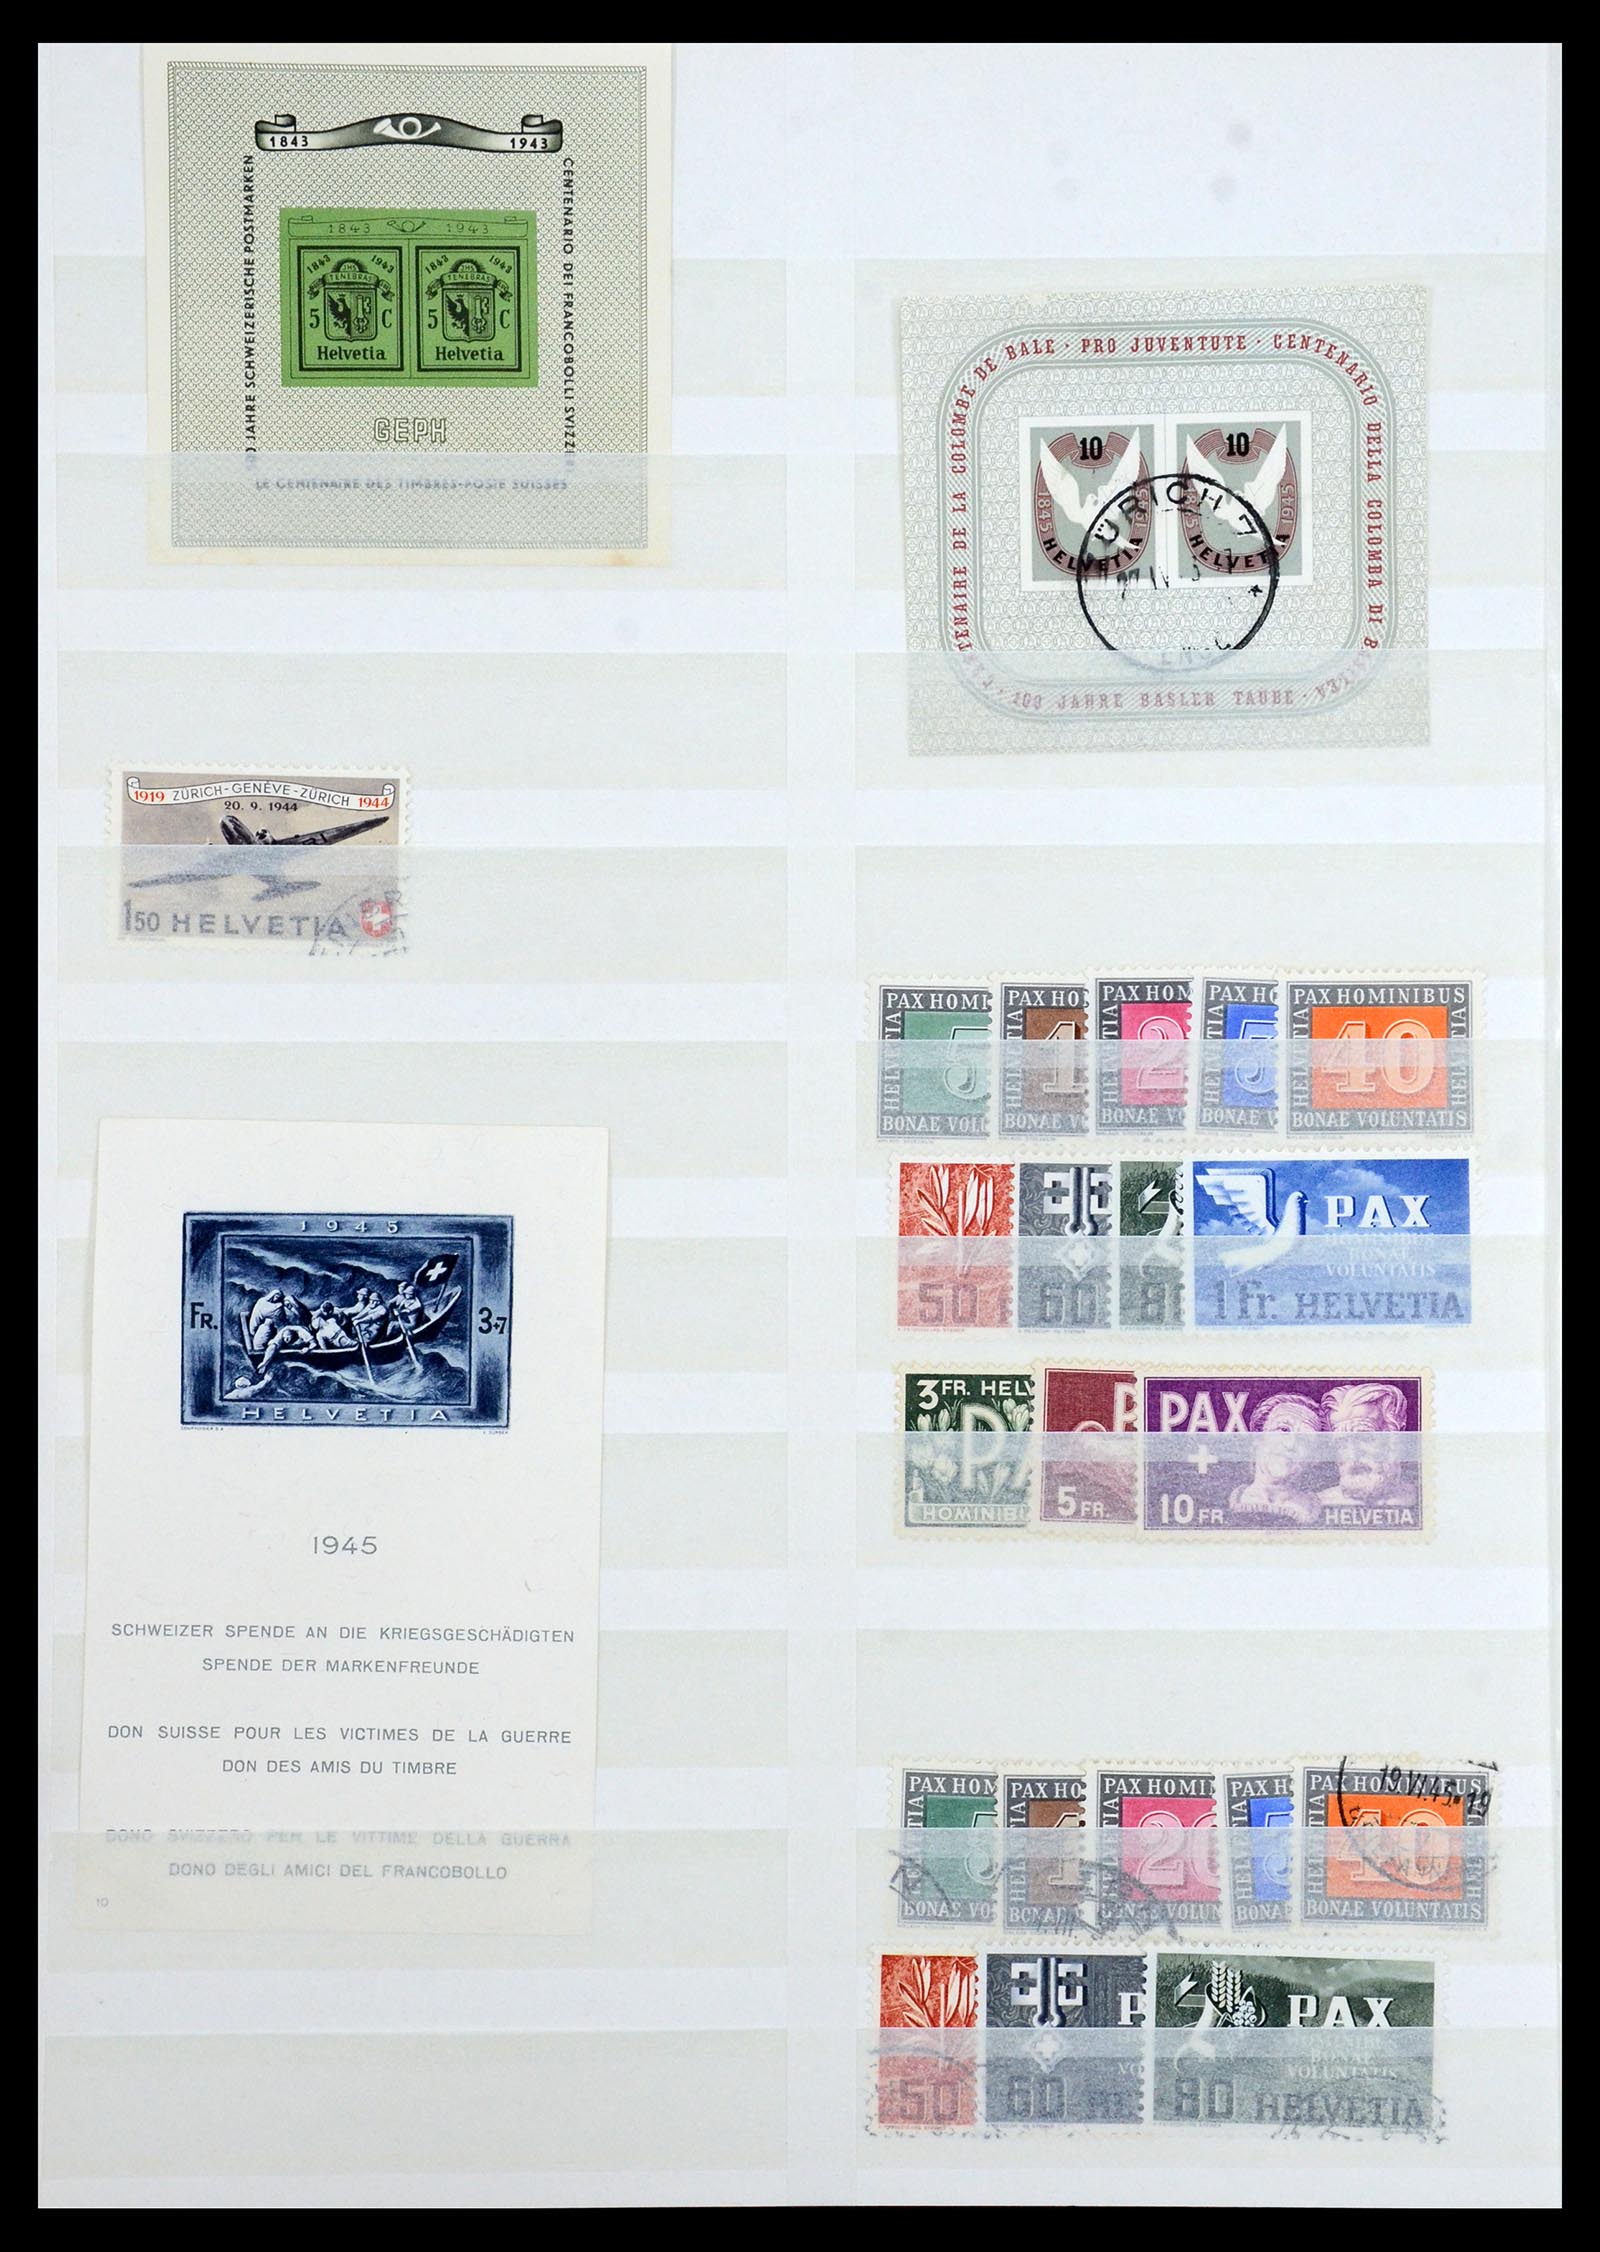 35165 015 - Postzegelverzameling 35165 Zwitserland en Luxemburg toppers.